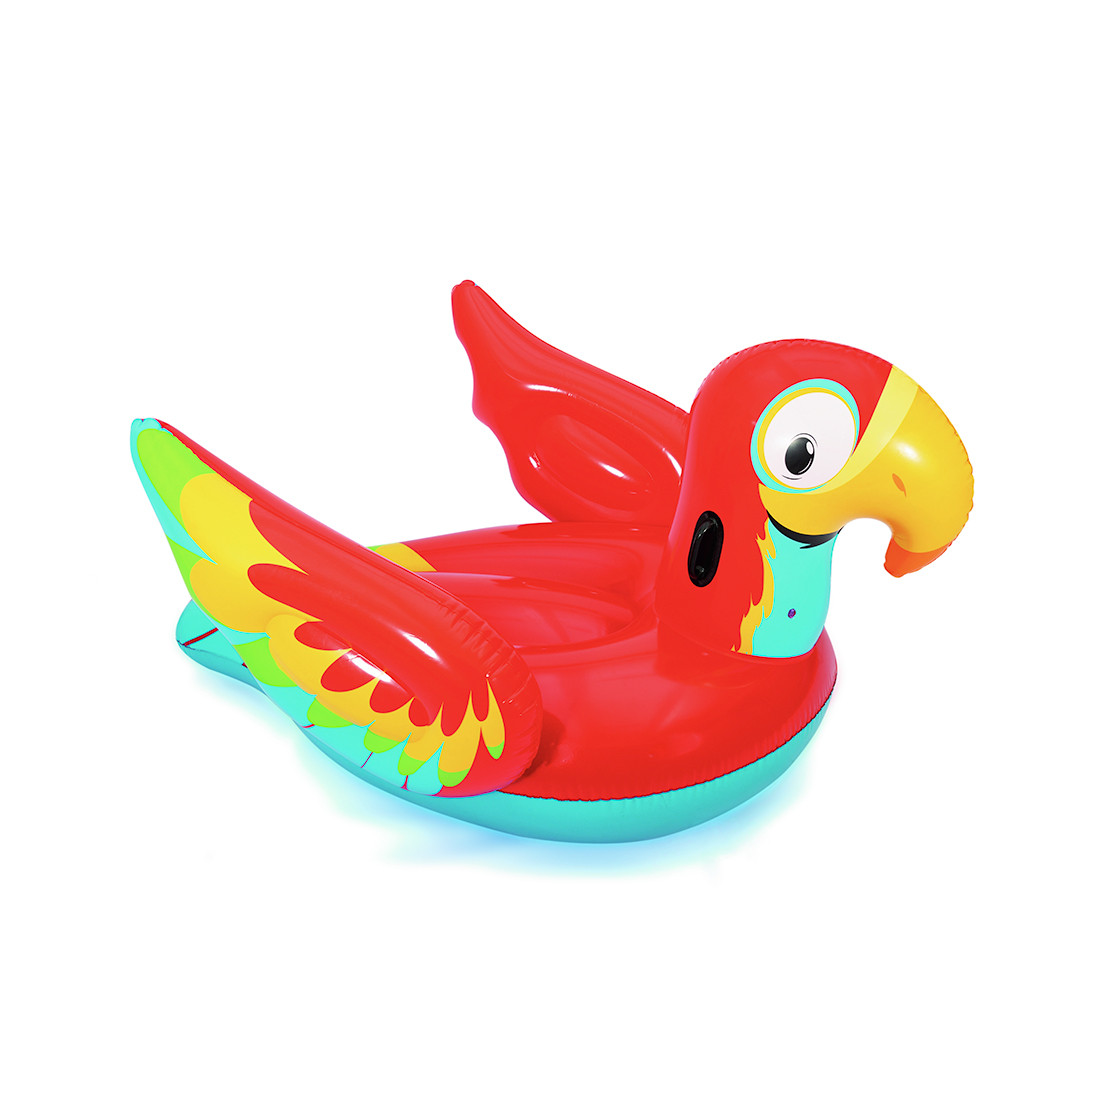 Надувная игрушка Bestway 41127 в форме попугая для плавания